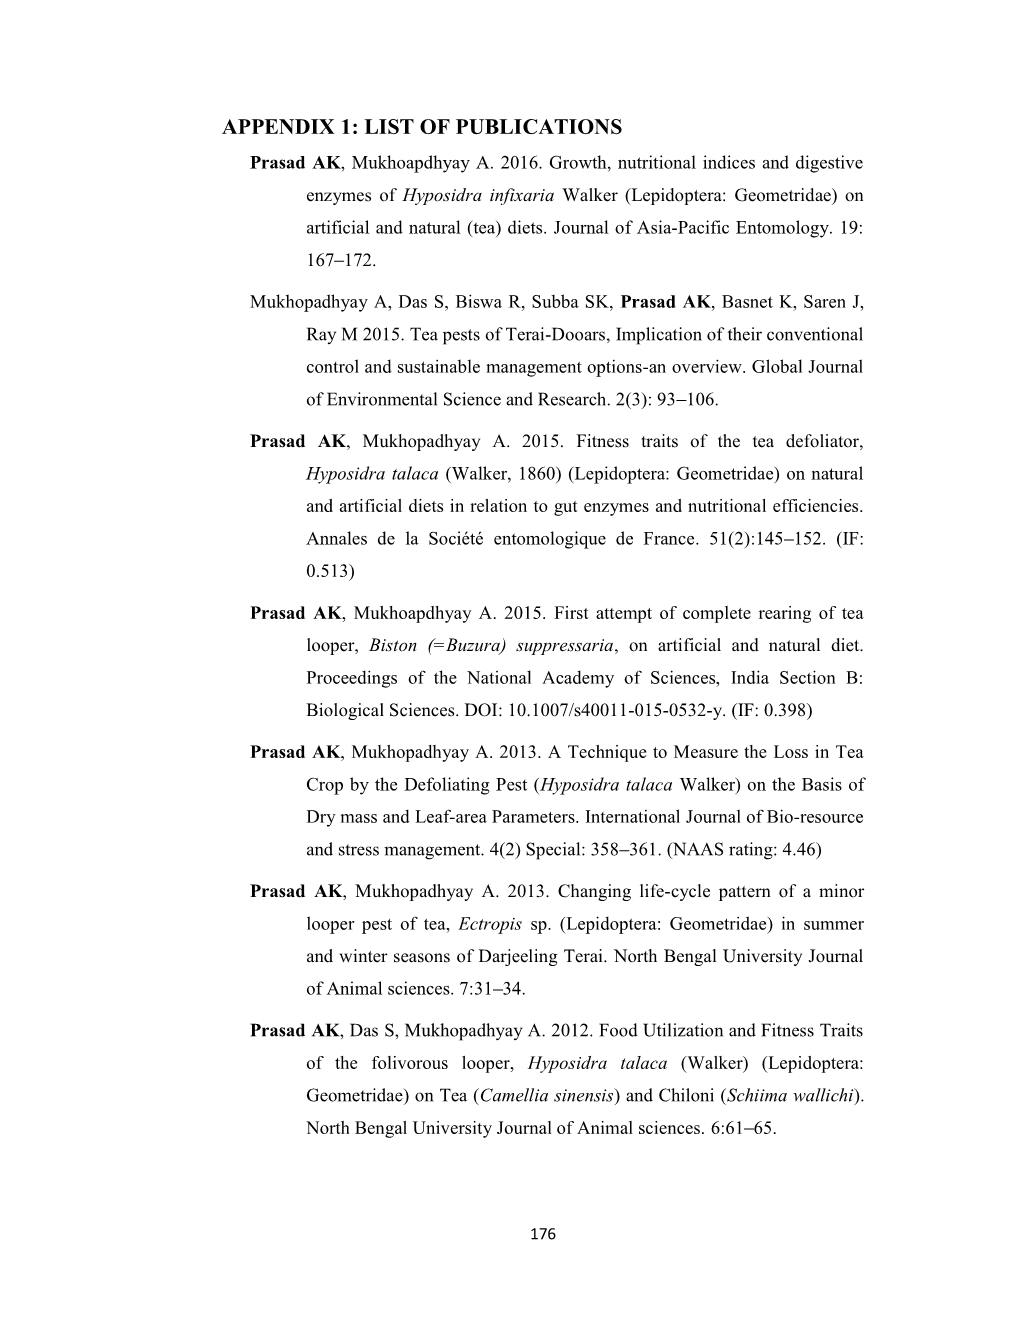 APPENDIX 1: LIST of PUBLICATIONS Prasad AK, Mukhoapdhyay A